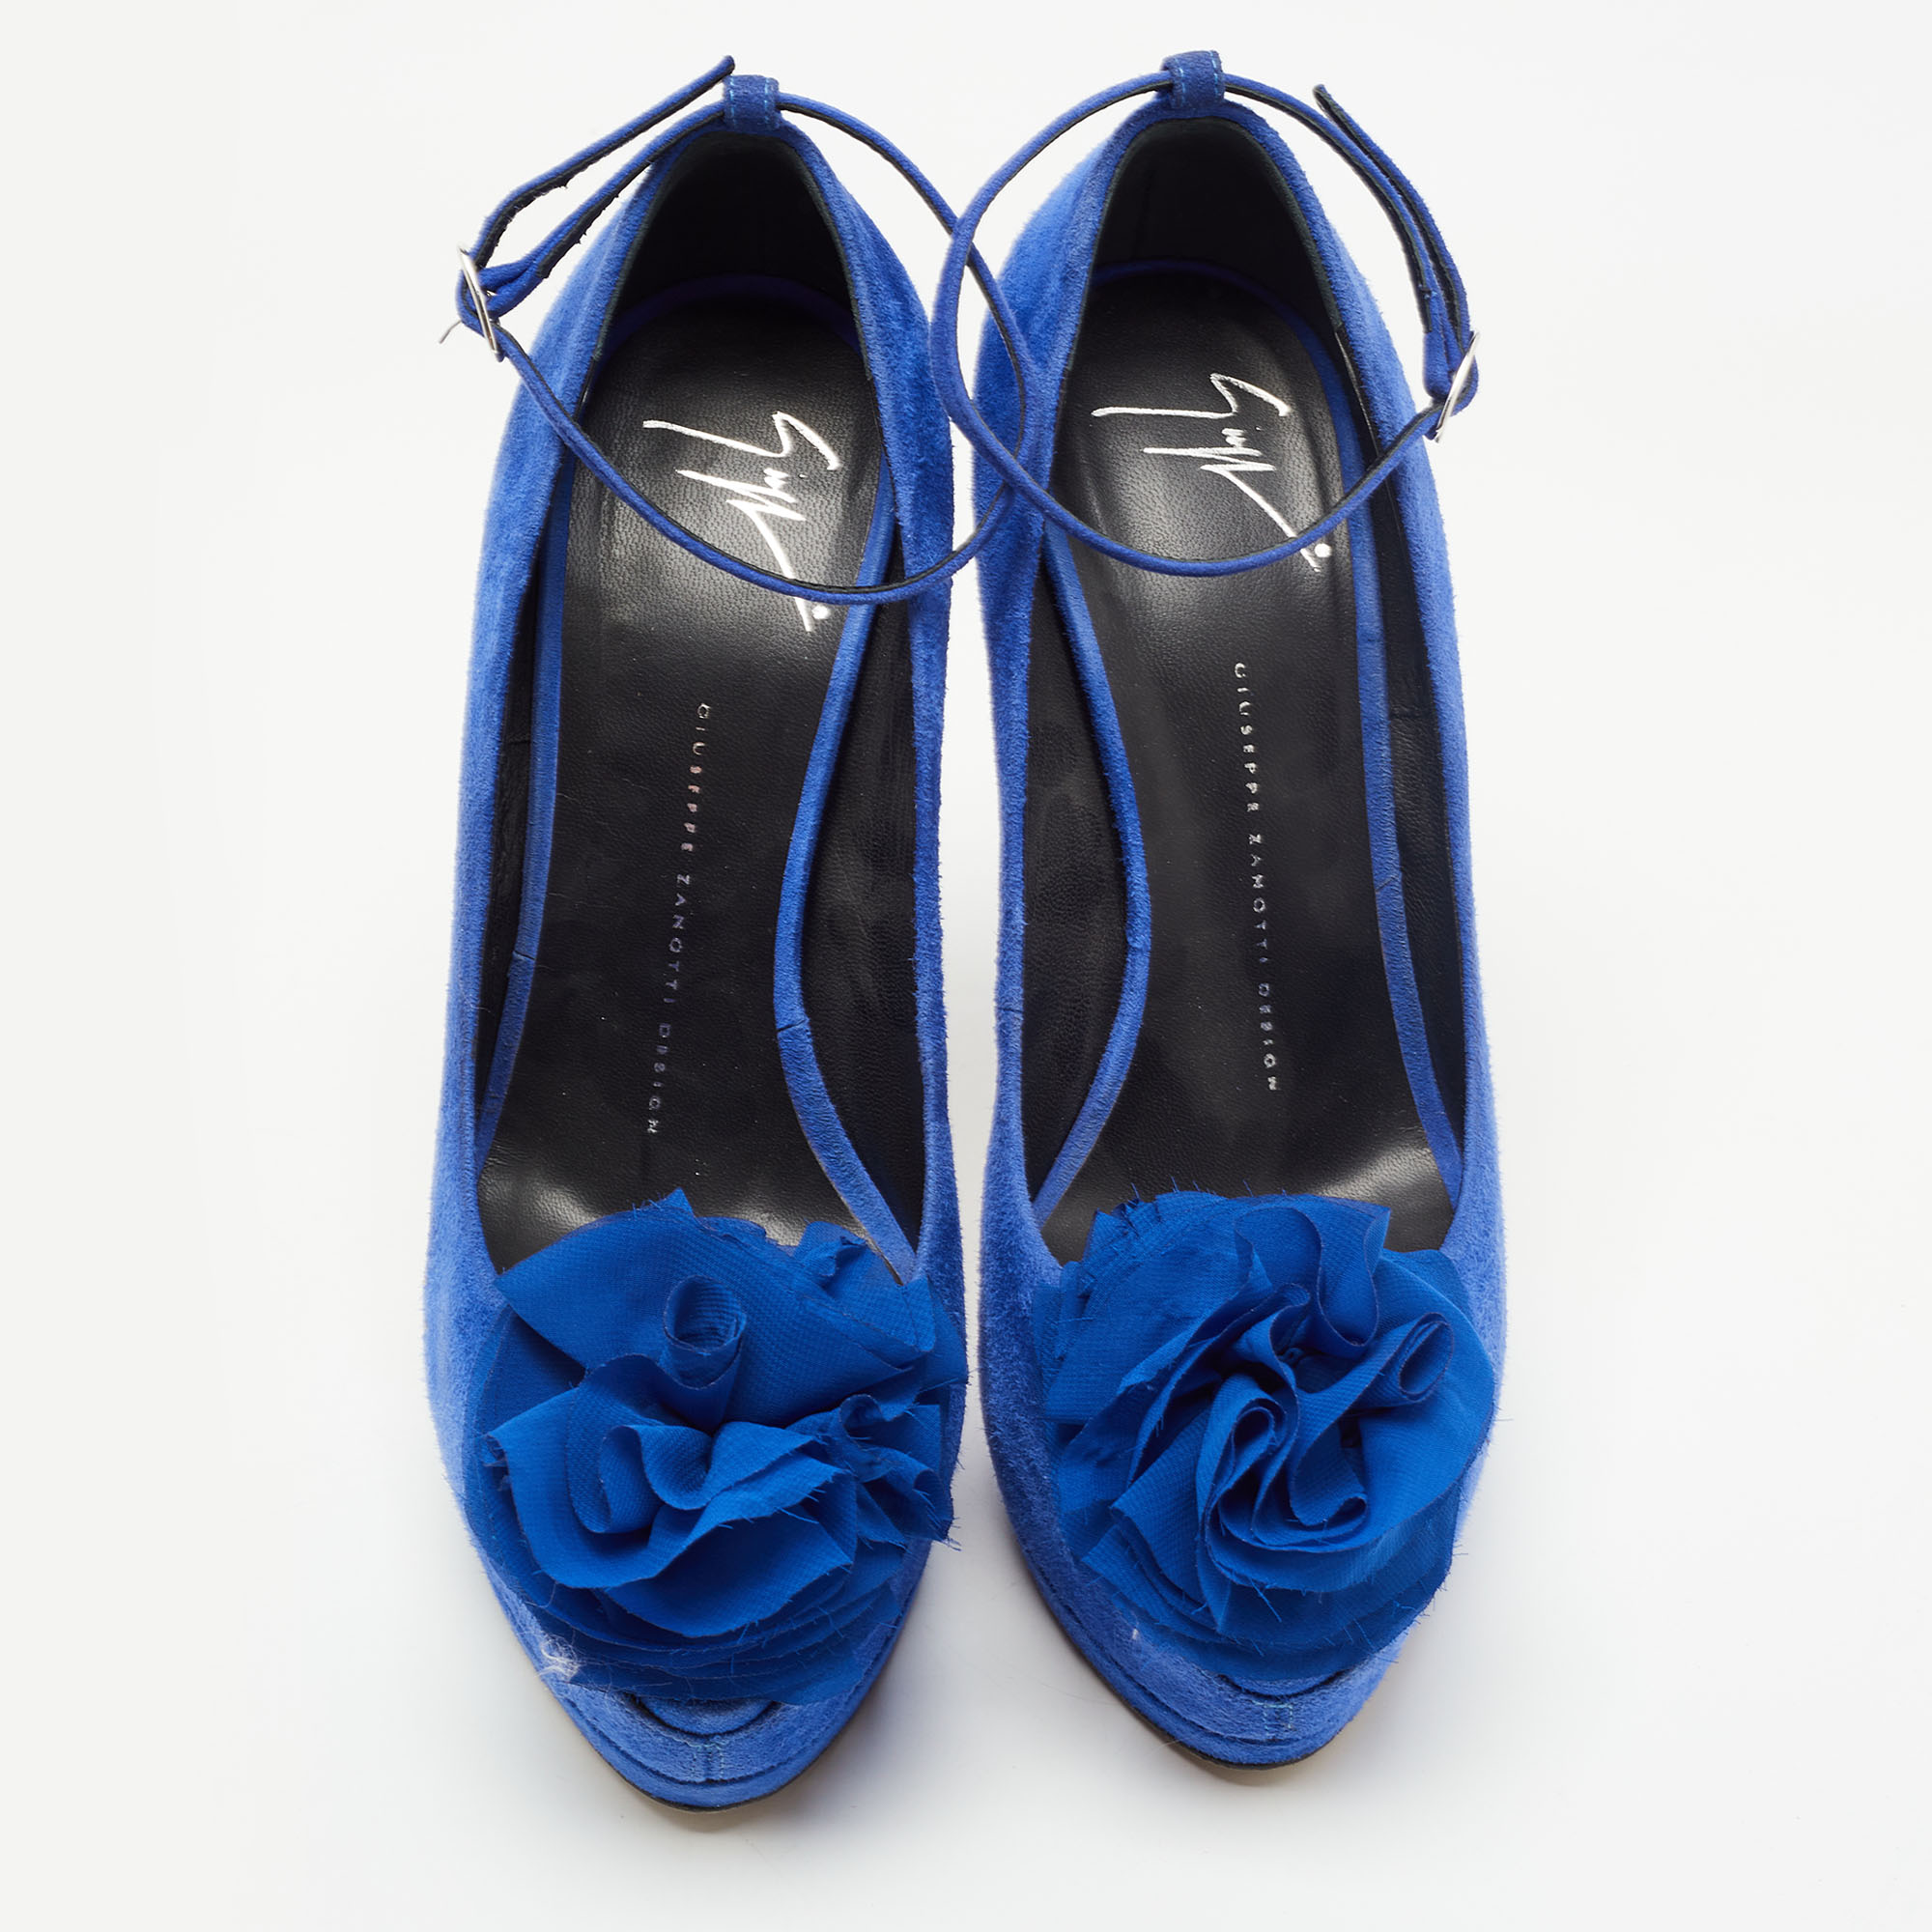 Giuseppe Zanotti Blue Suede Flower Applique Peep Toe Platform Ankle Strap Pumps Size 39